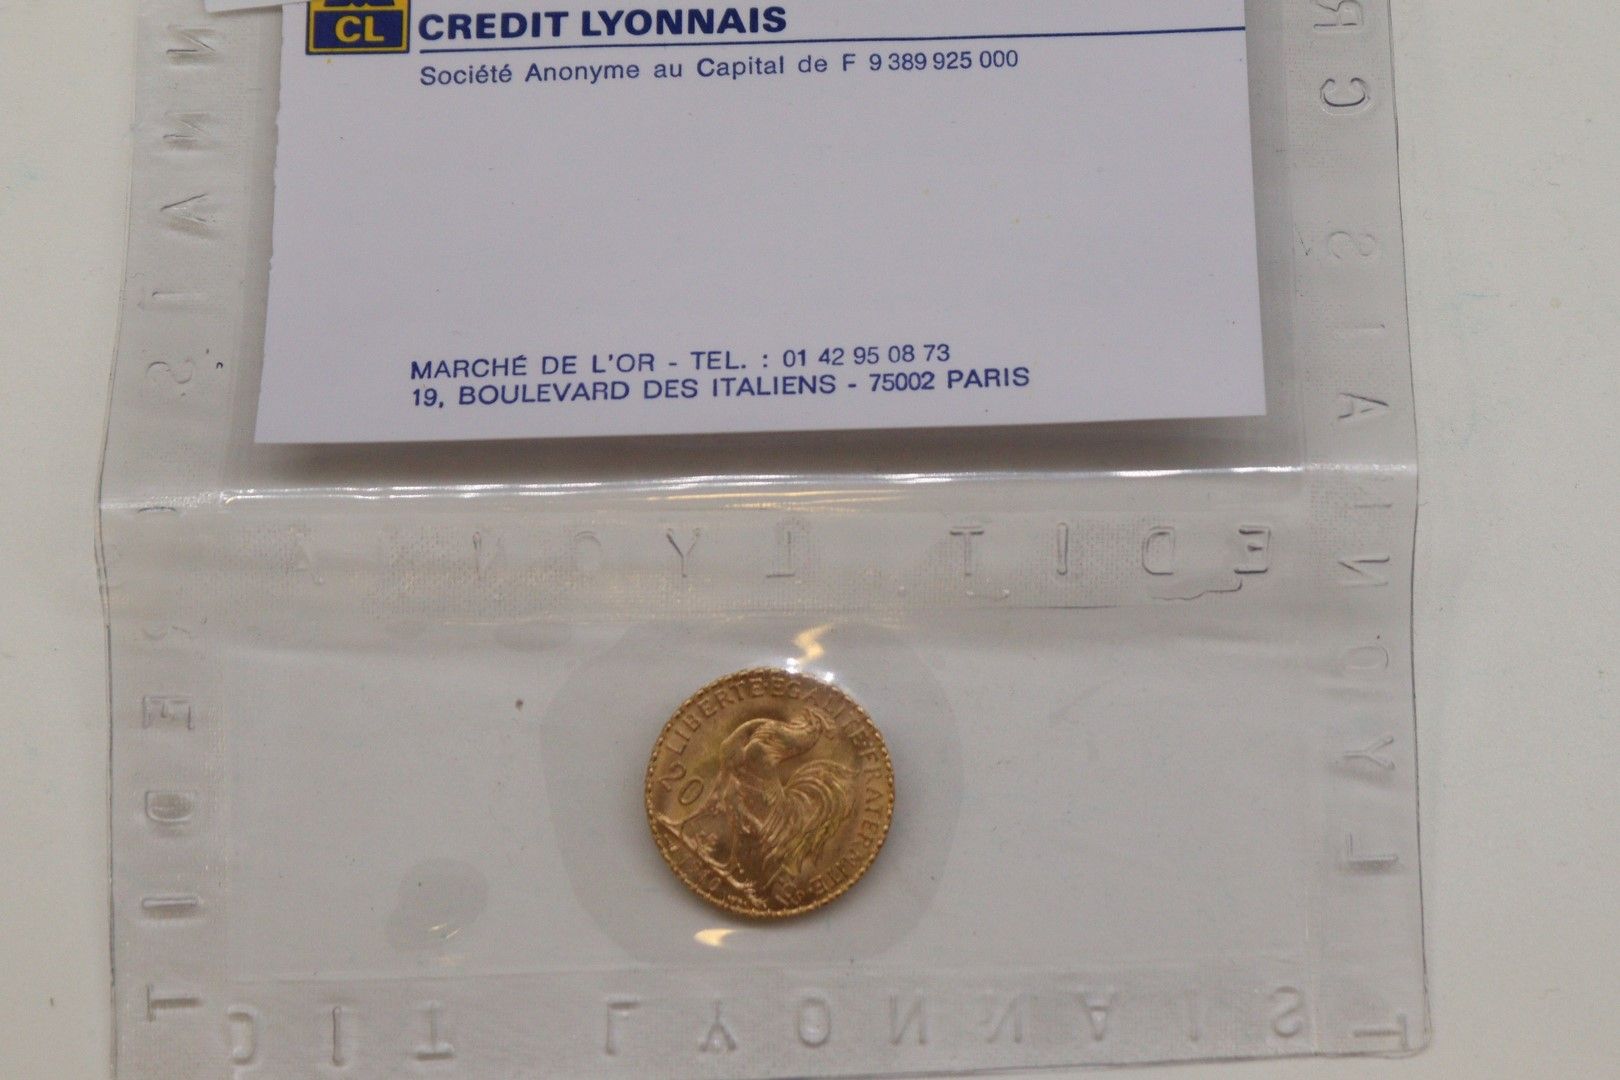 Null 1 Goldmünze von 20 Francs mit Hahn unter Siegel.

Gewicht: 6,45 g.